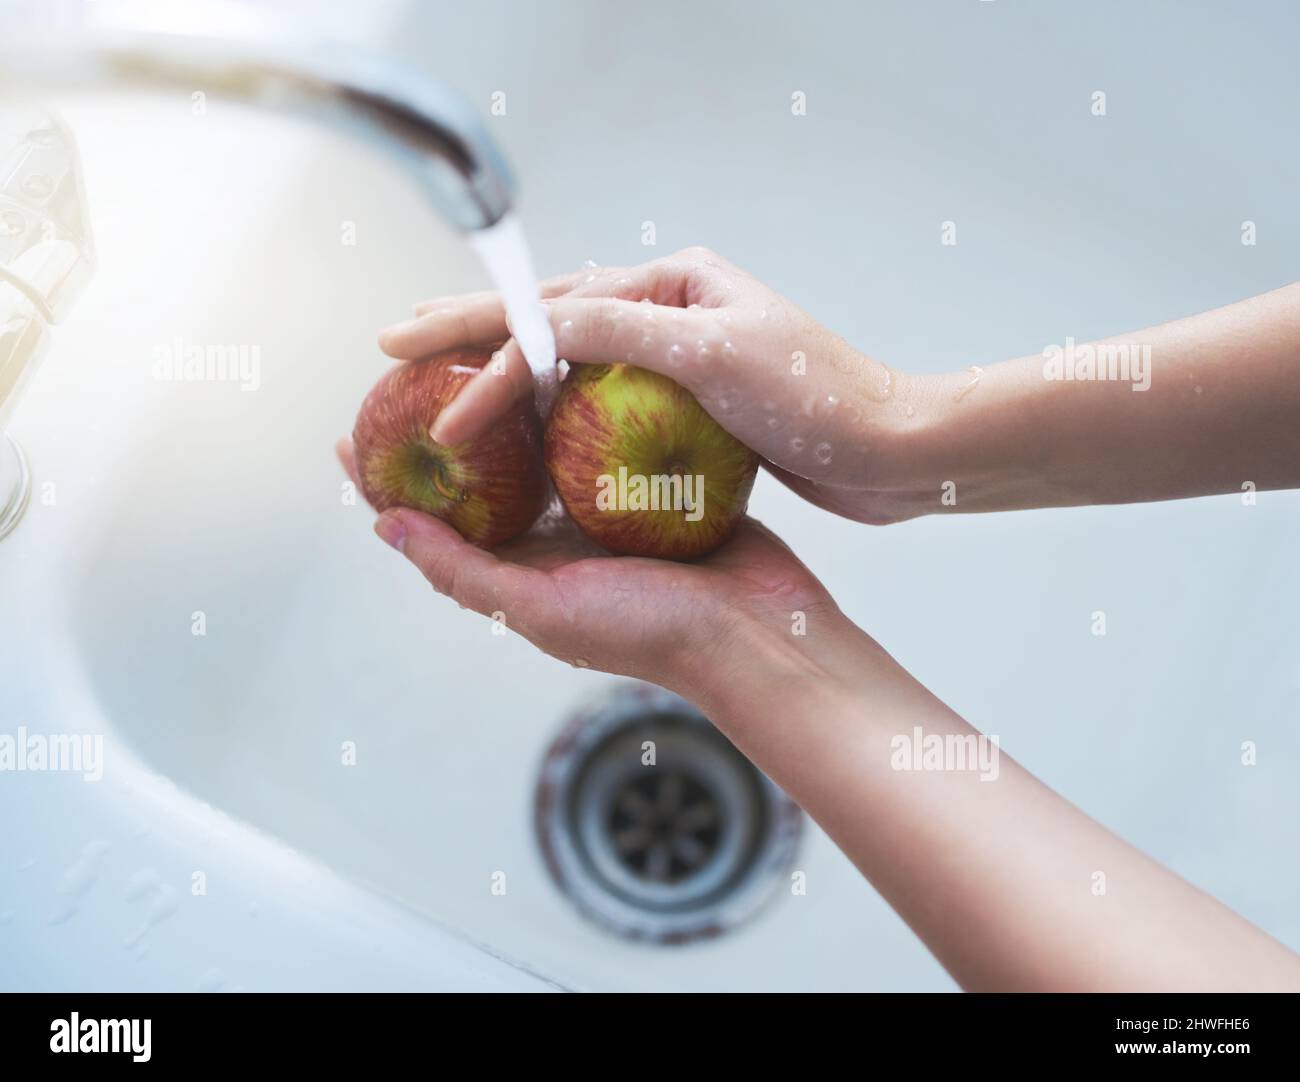 Im Begriff, einige saftige Äpfel zu genießen. Schuss einer Person, die Äpfel unter fließendem Wasser wäscht. Stockfoto